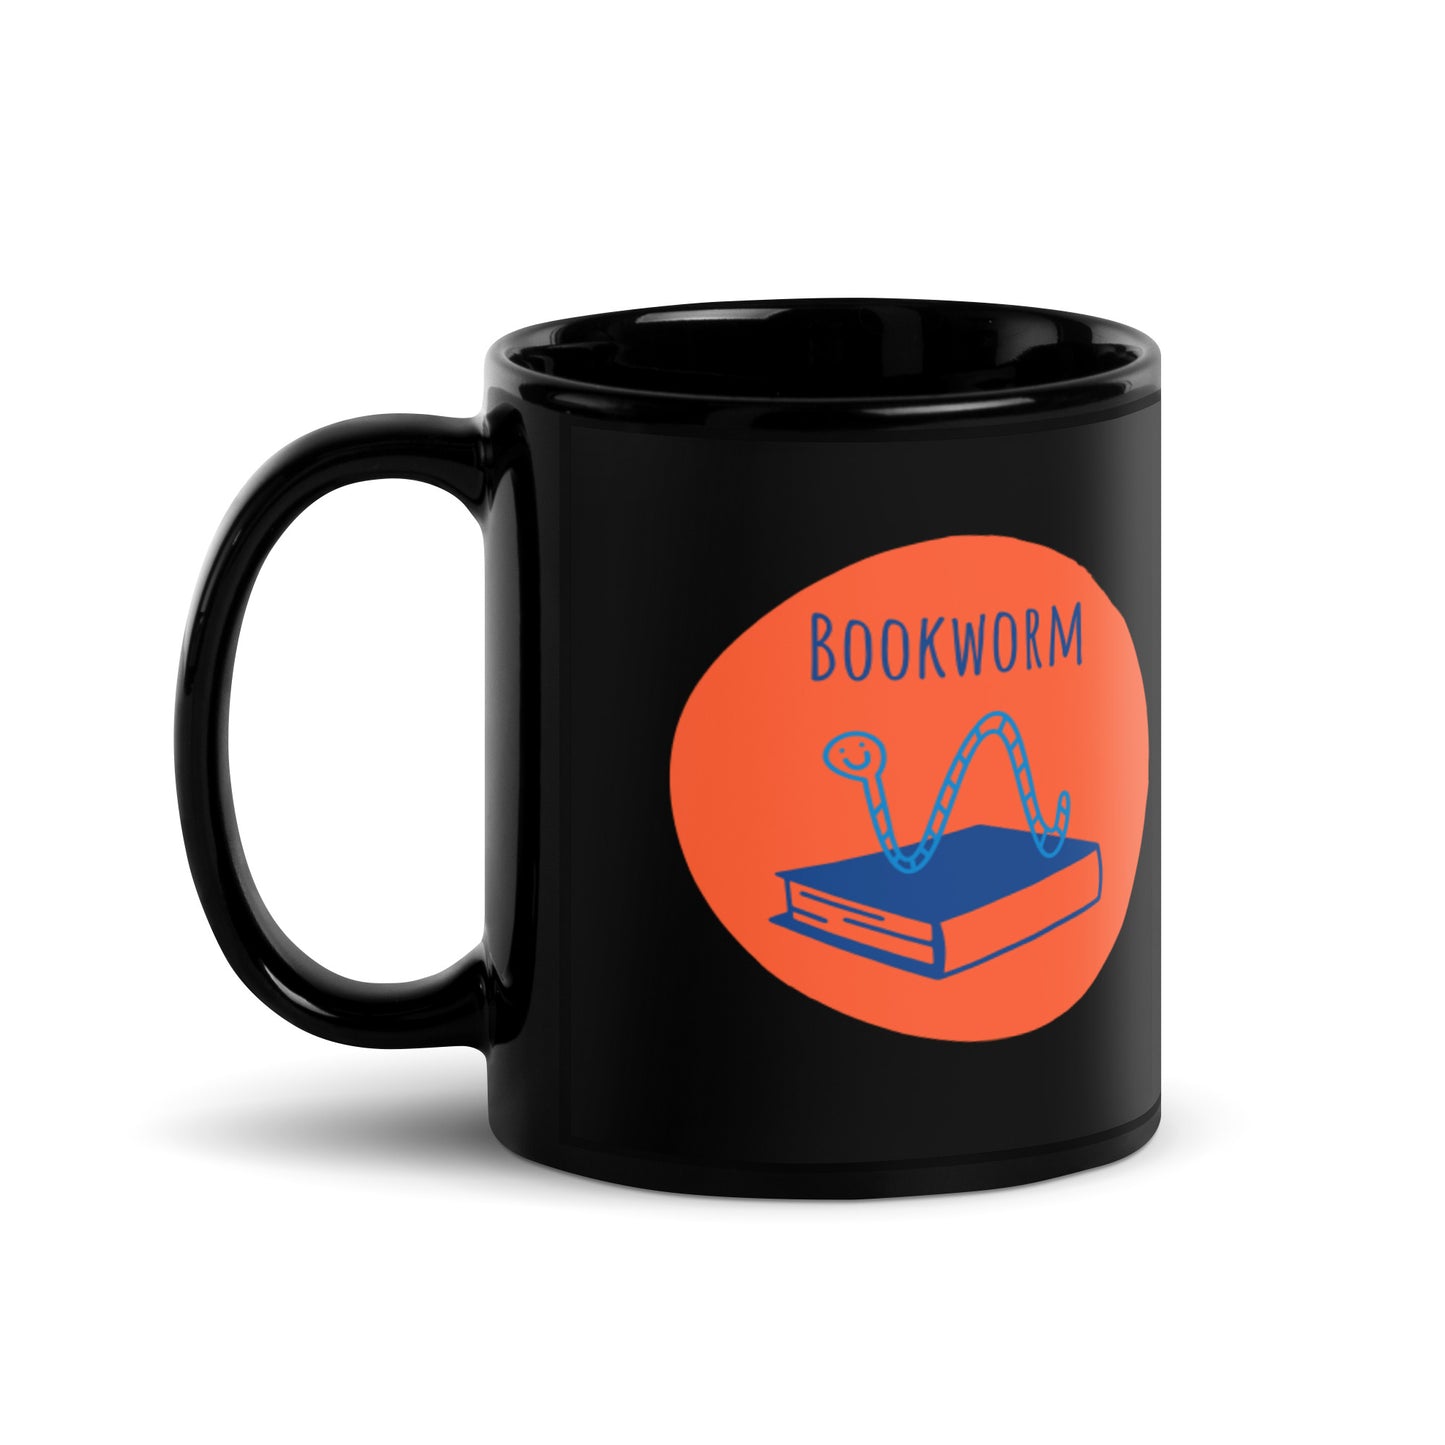 Bookworm Mug-Black w/Orange and Blue Design- 11oz. - The Spinster Librarian Shop